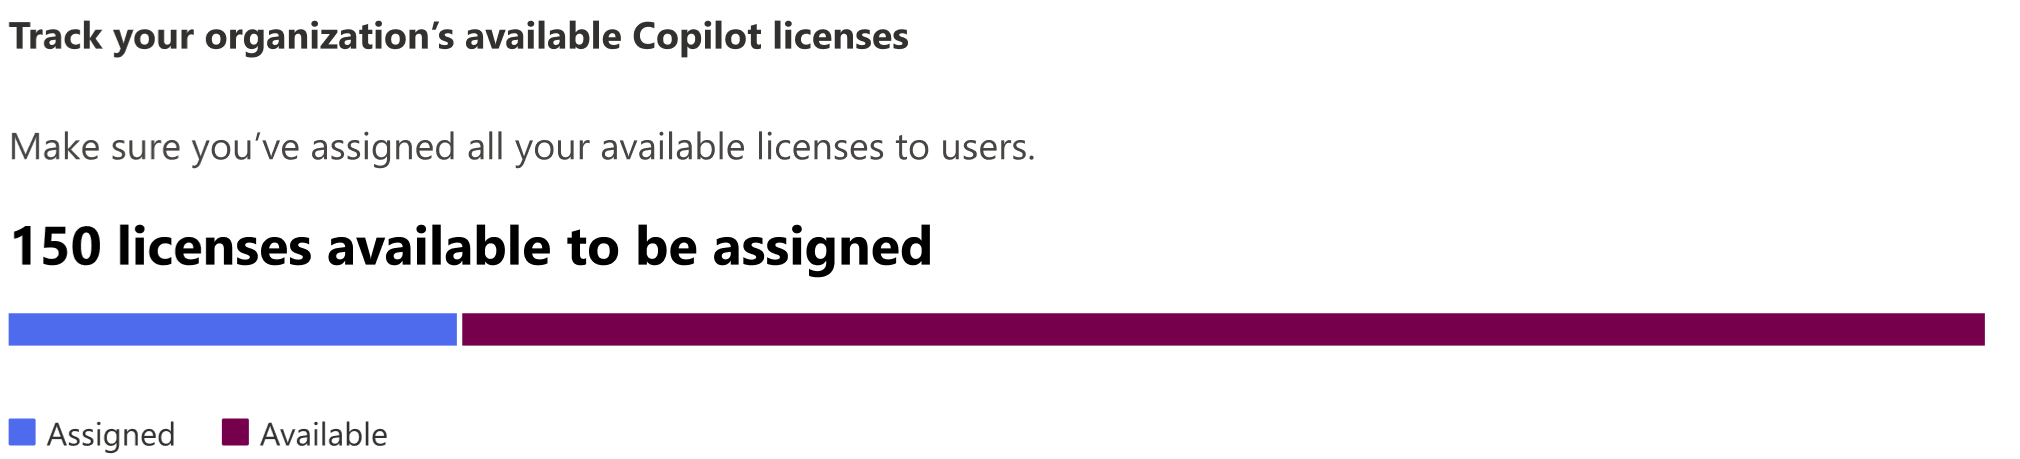 Captura de pantalla que muestra el número de licencias disponibles de una organización que se van a asignar.